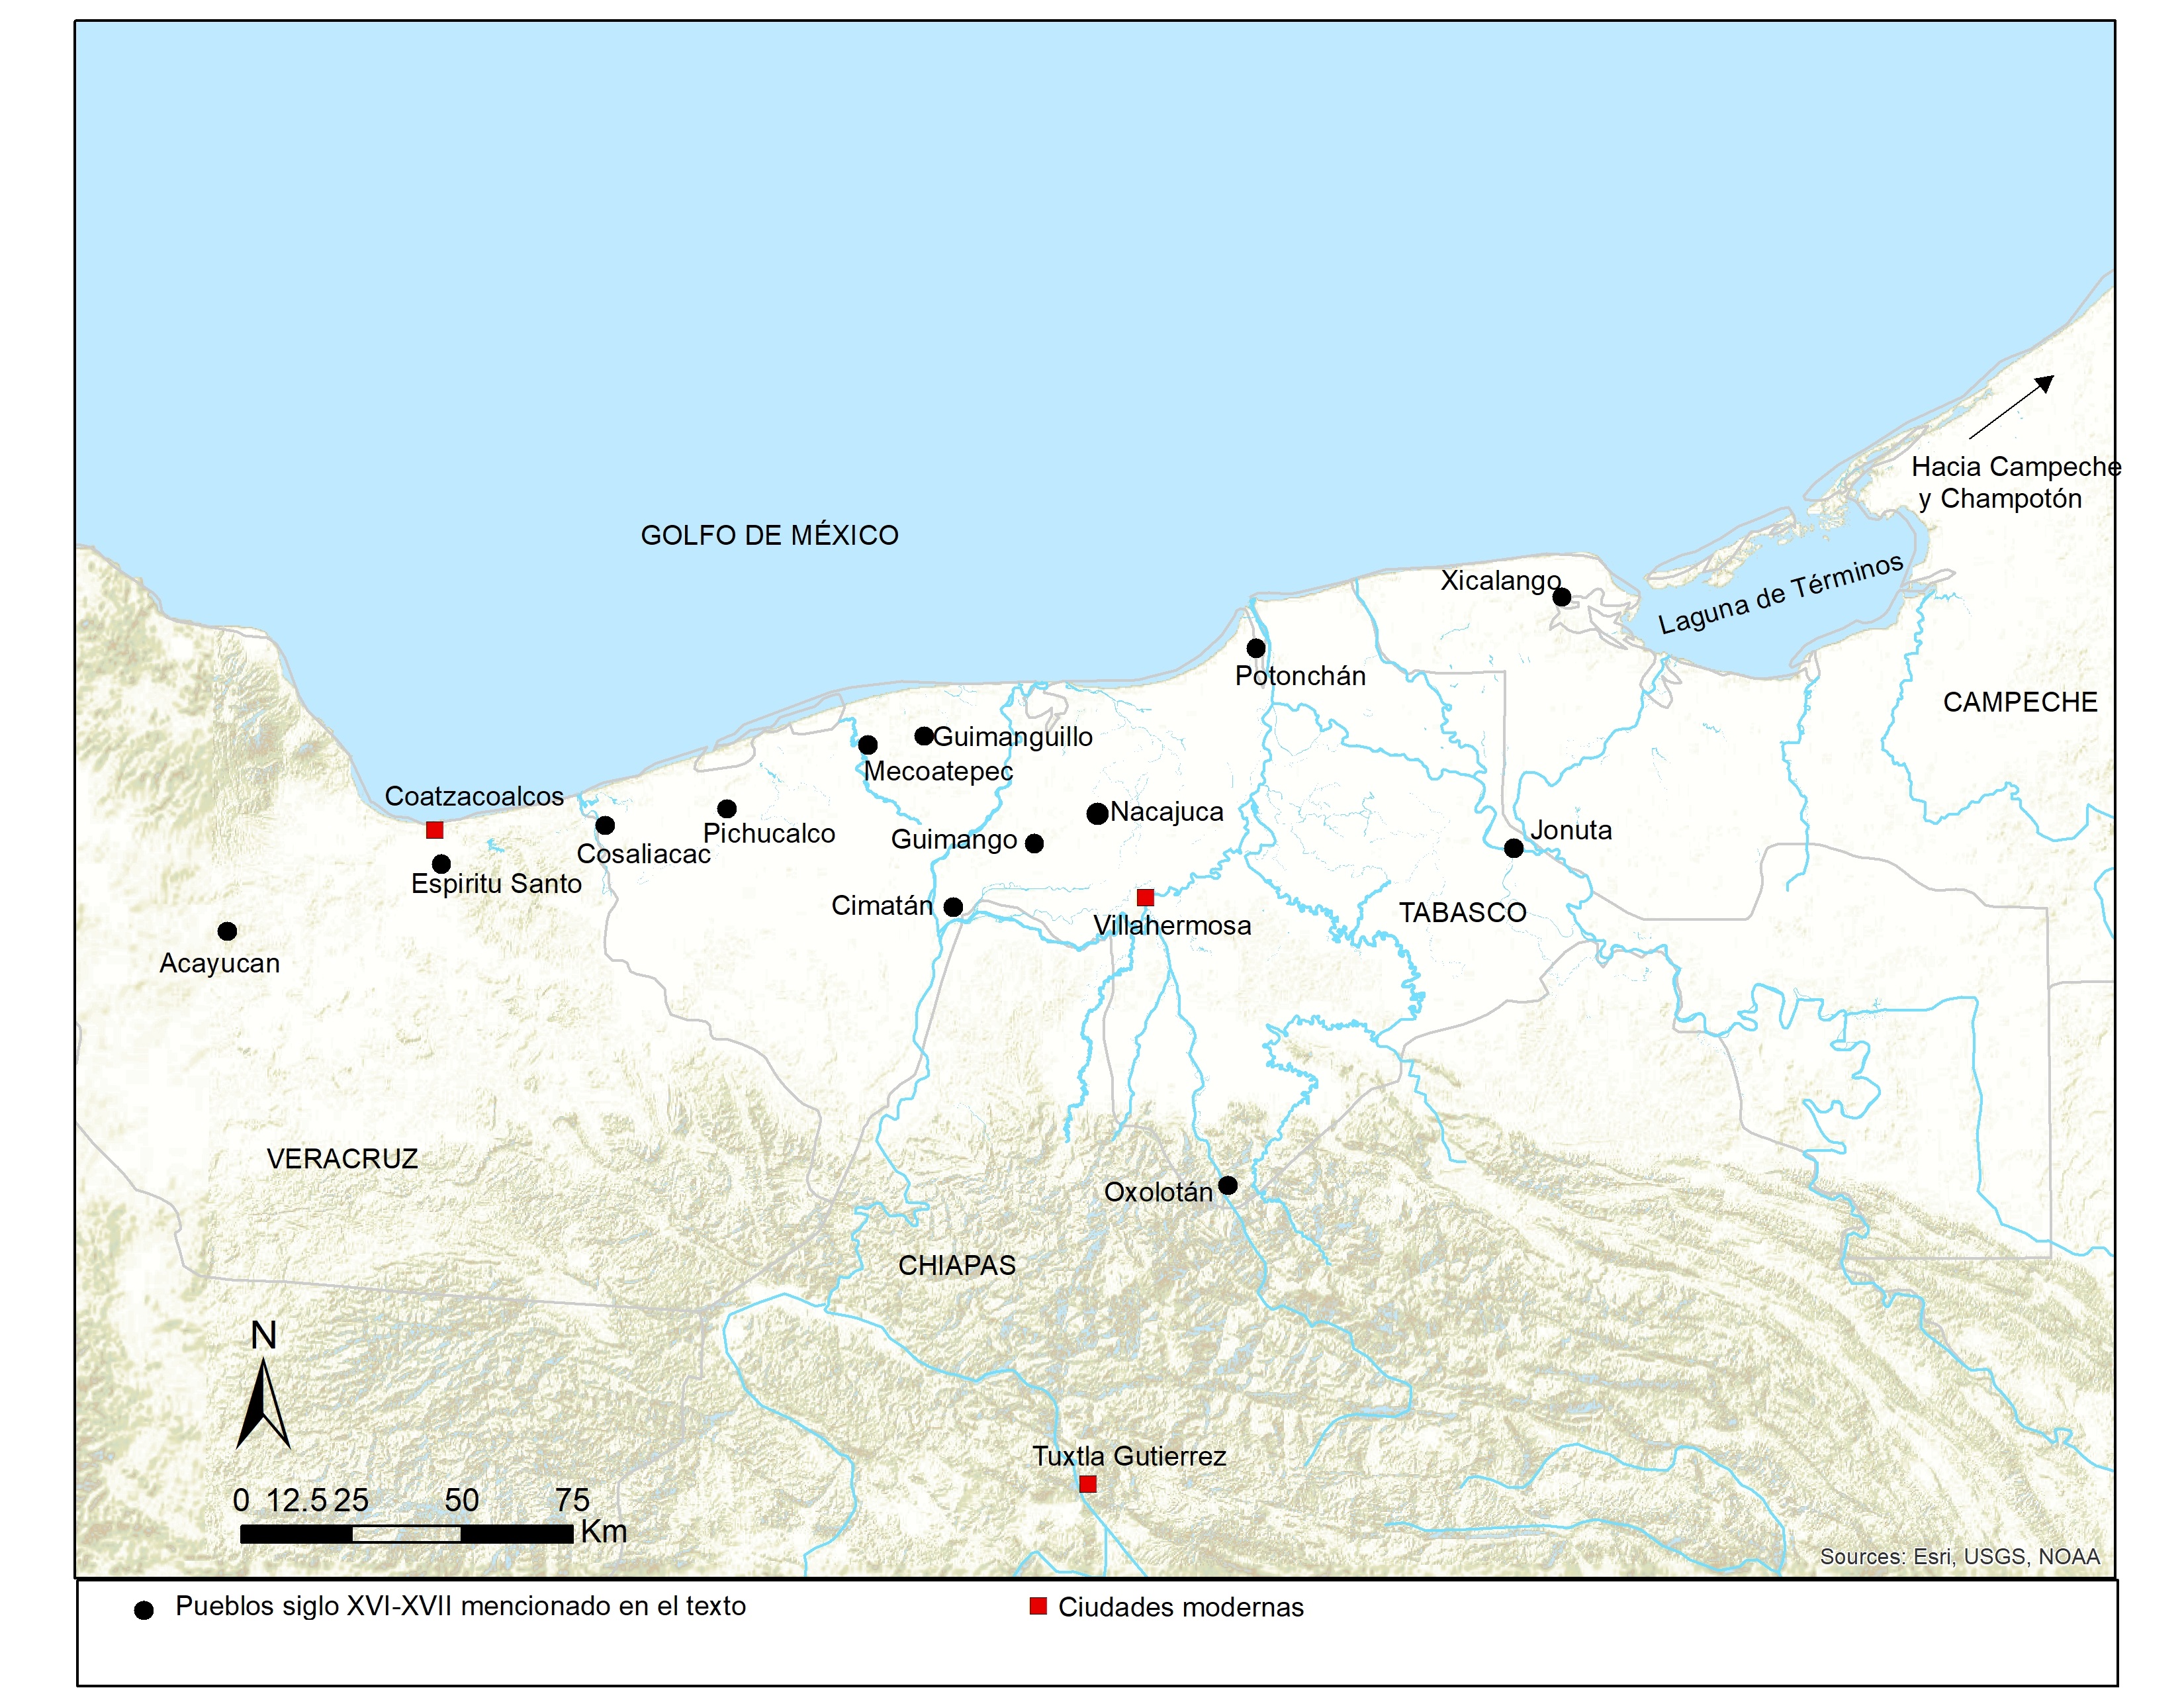 3.	Mapa con algunas de las localidades mencionadas en el texto (autora: Nicoletta Maestri)